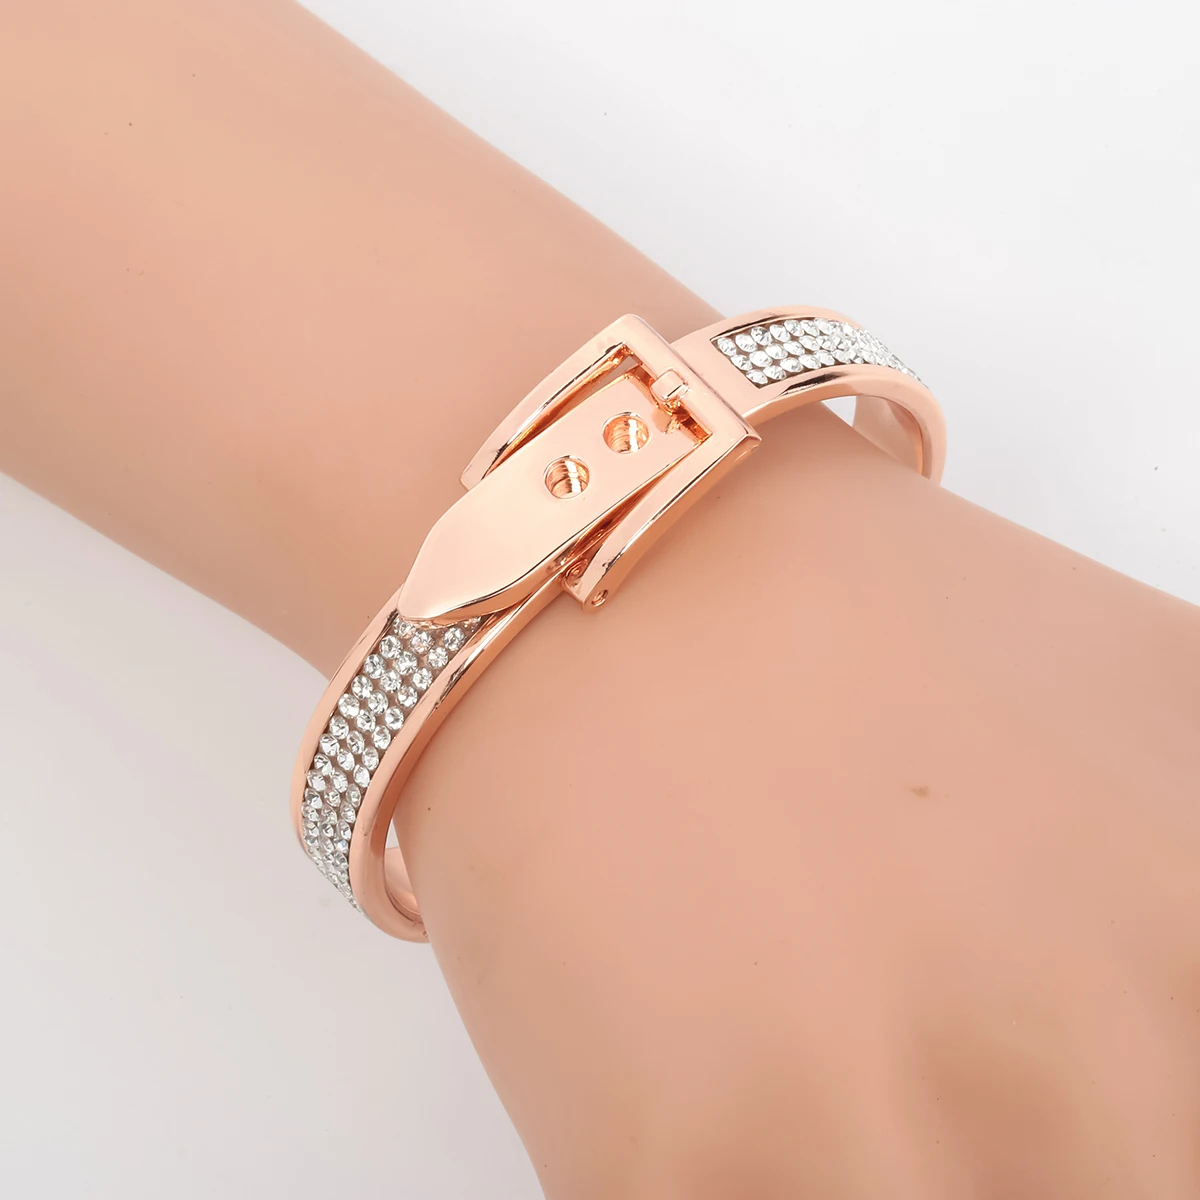 YACQ ремень браслет модные украшения подарок для женщин ее жены серебро розовое золото цвет кристалл FT05 дропшиппинг регулируемый